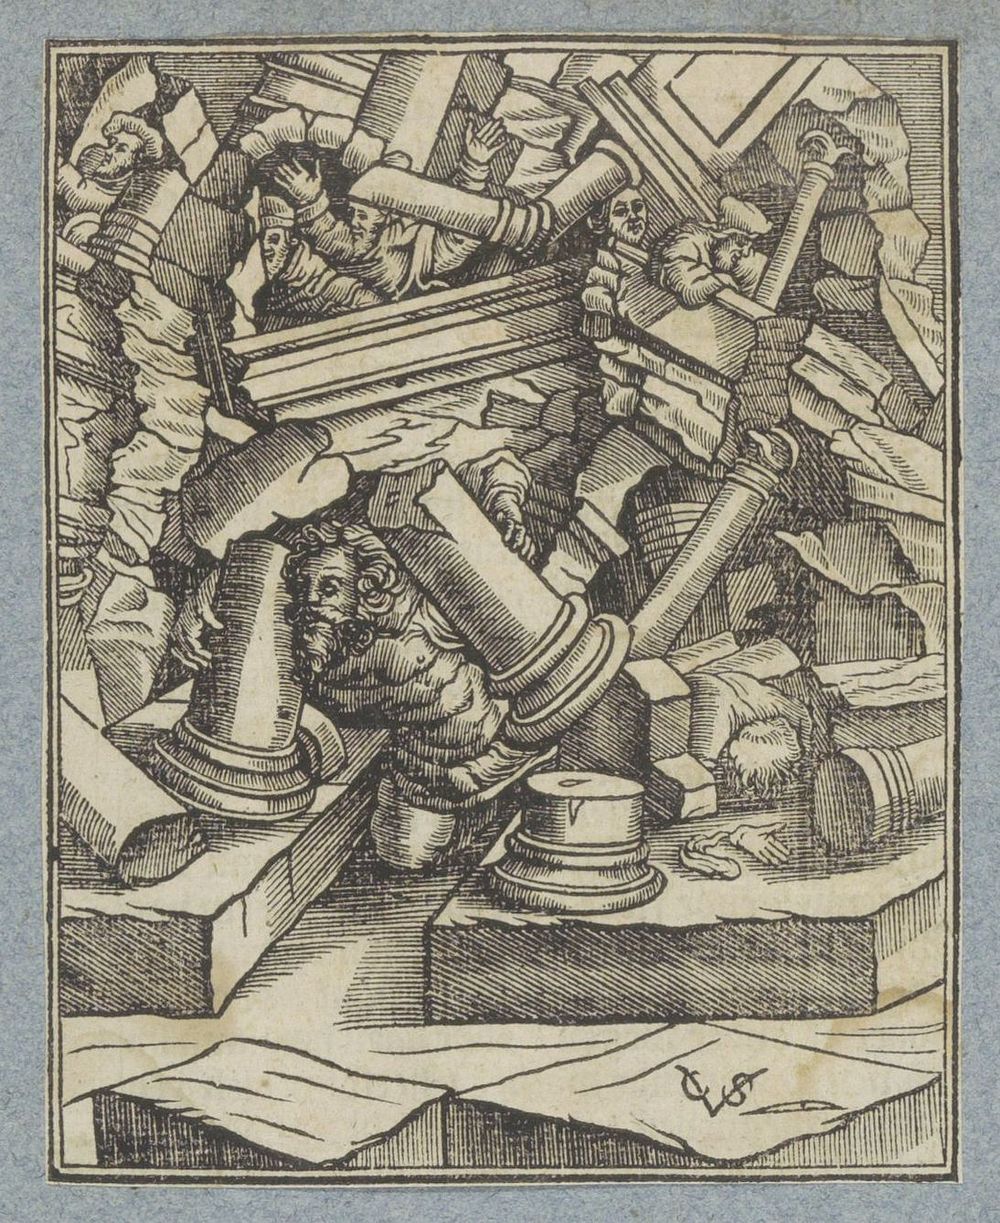 Simsons dood (1645 - 1646) by Christoffel van Sichem II, Christoffel van Sichem III and Pieter Jacobsz Paets